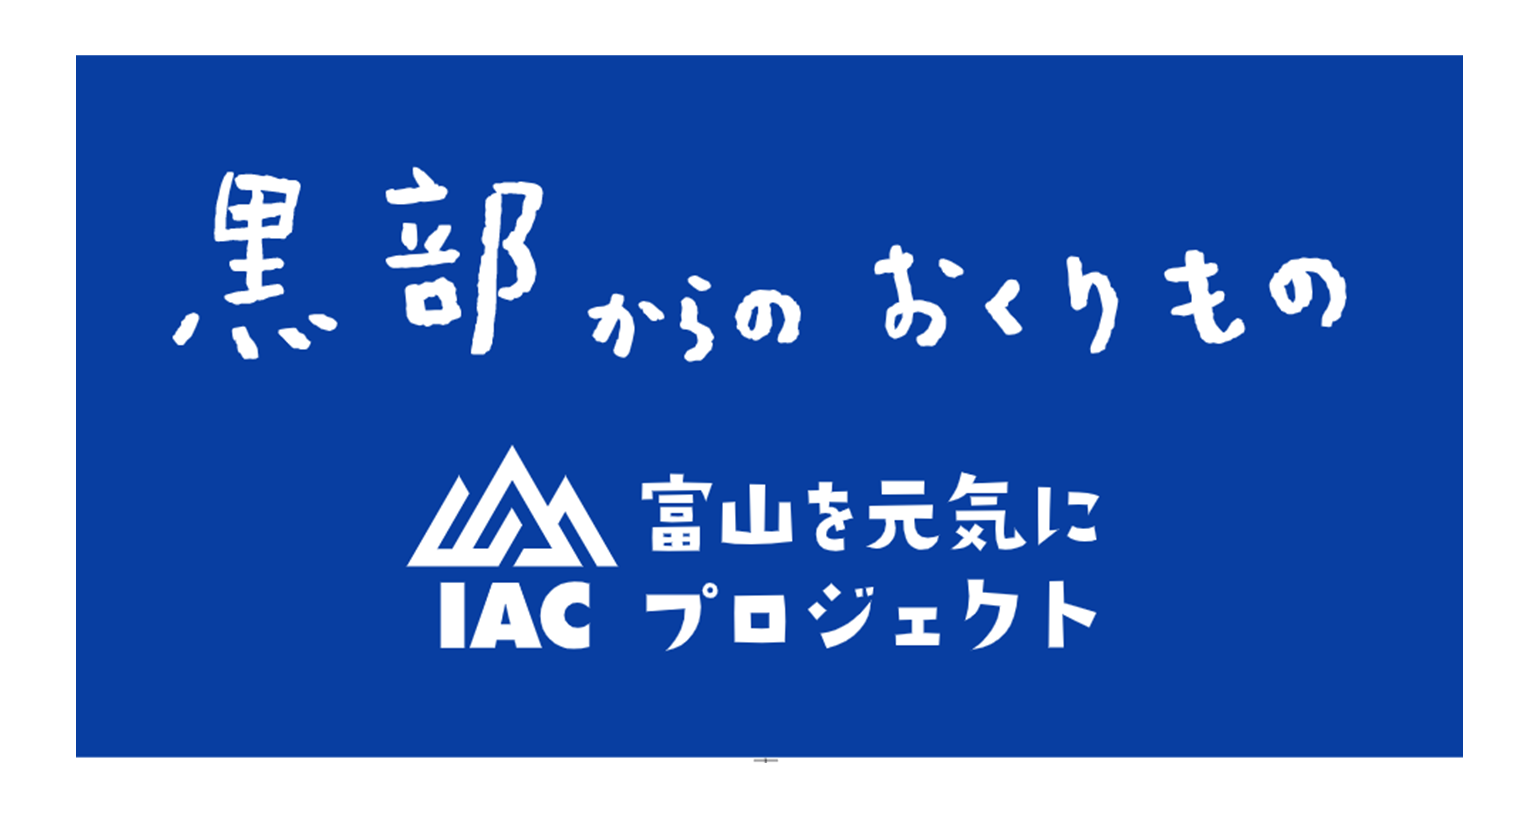 株式会社IAC